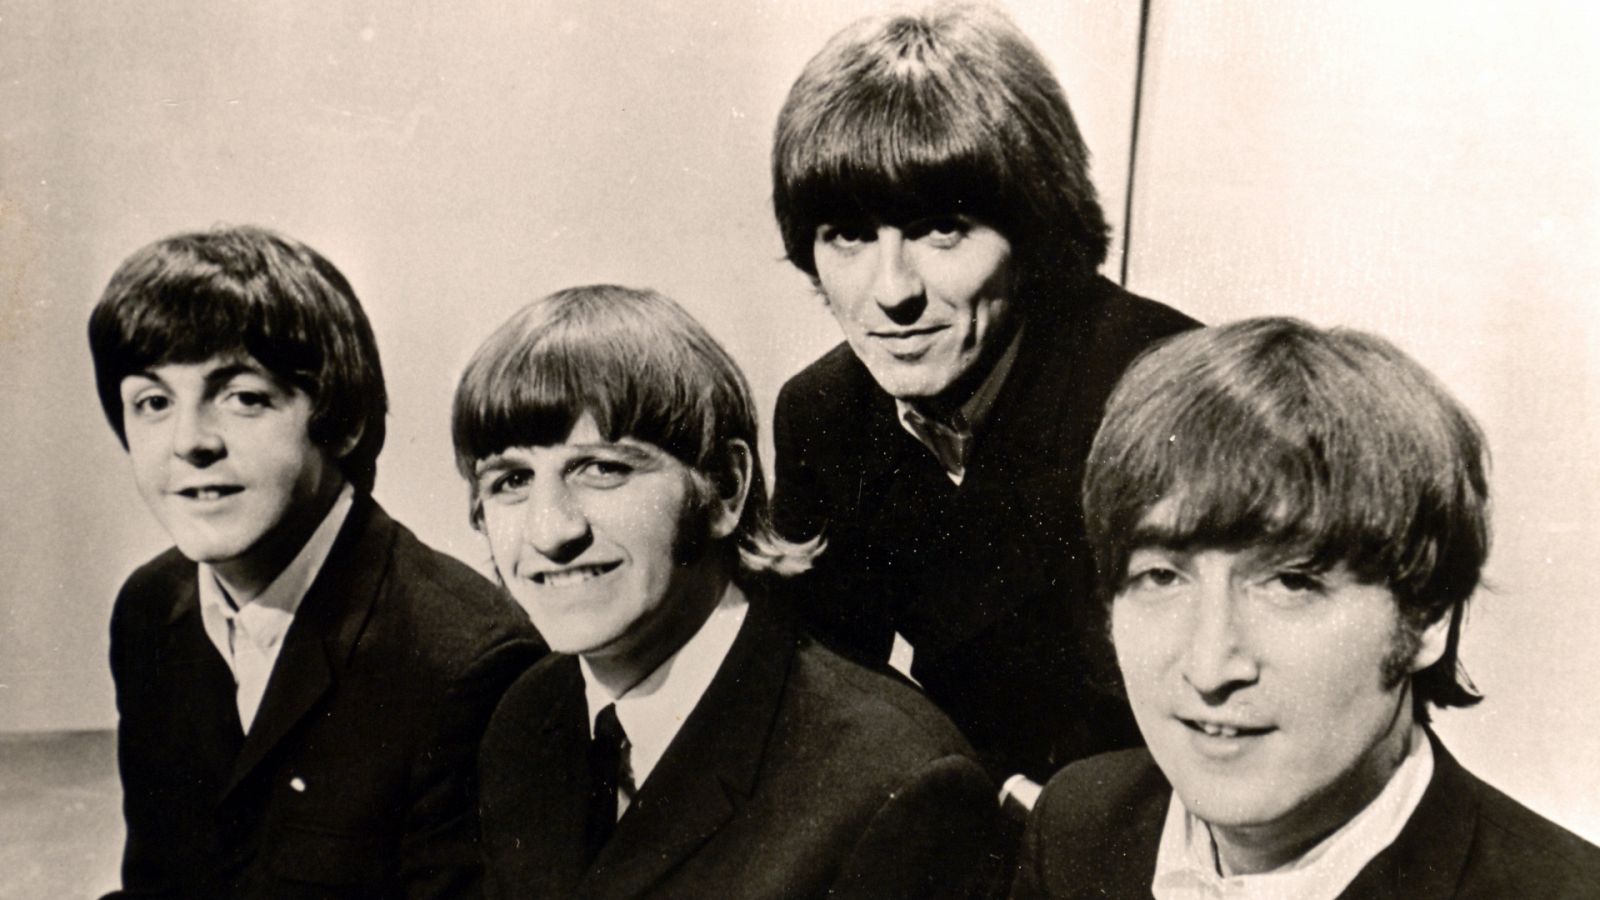 Paul McCartney, Ringo Starr, George Harrison y John Lennon, miembros de The Beatles, en una imagen de los años 60.